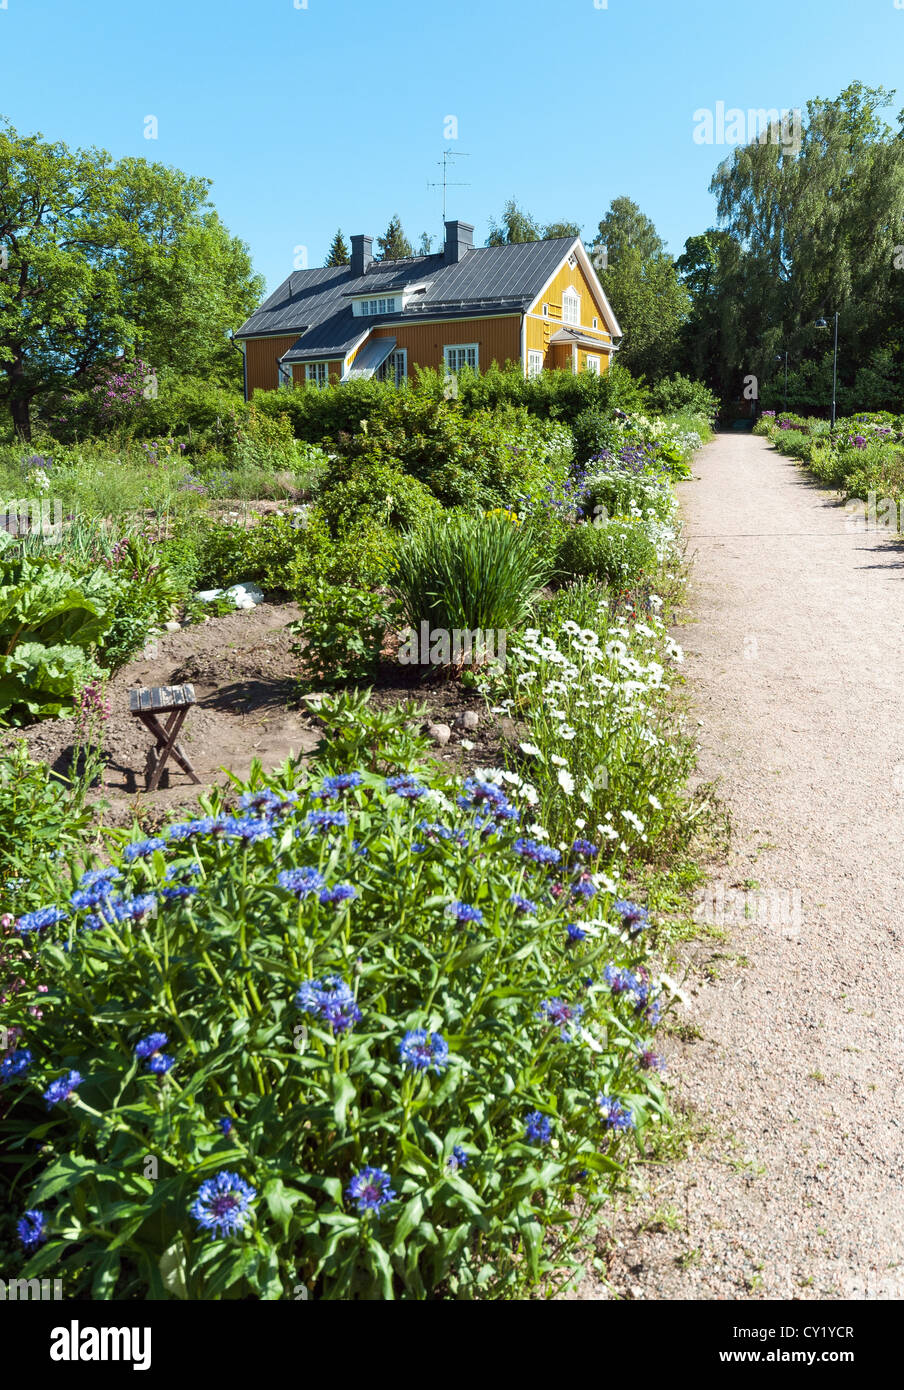 Holzhaus und Zuteilung in Annala, Gartenarbeit Freizeit und Freizeit Ziel im Besitz der Stadt Helsinki, Finnland Stockfoto